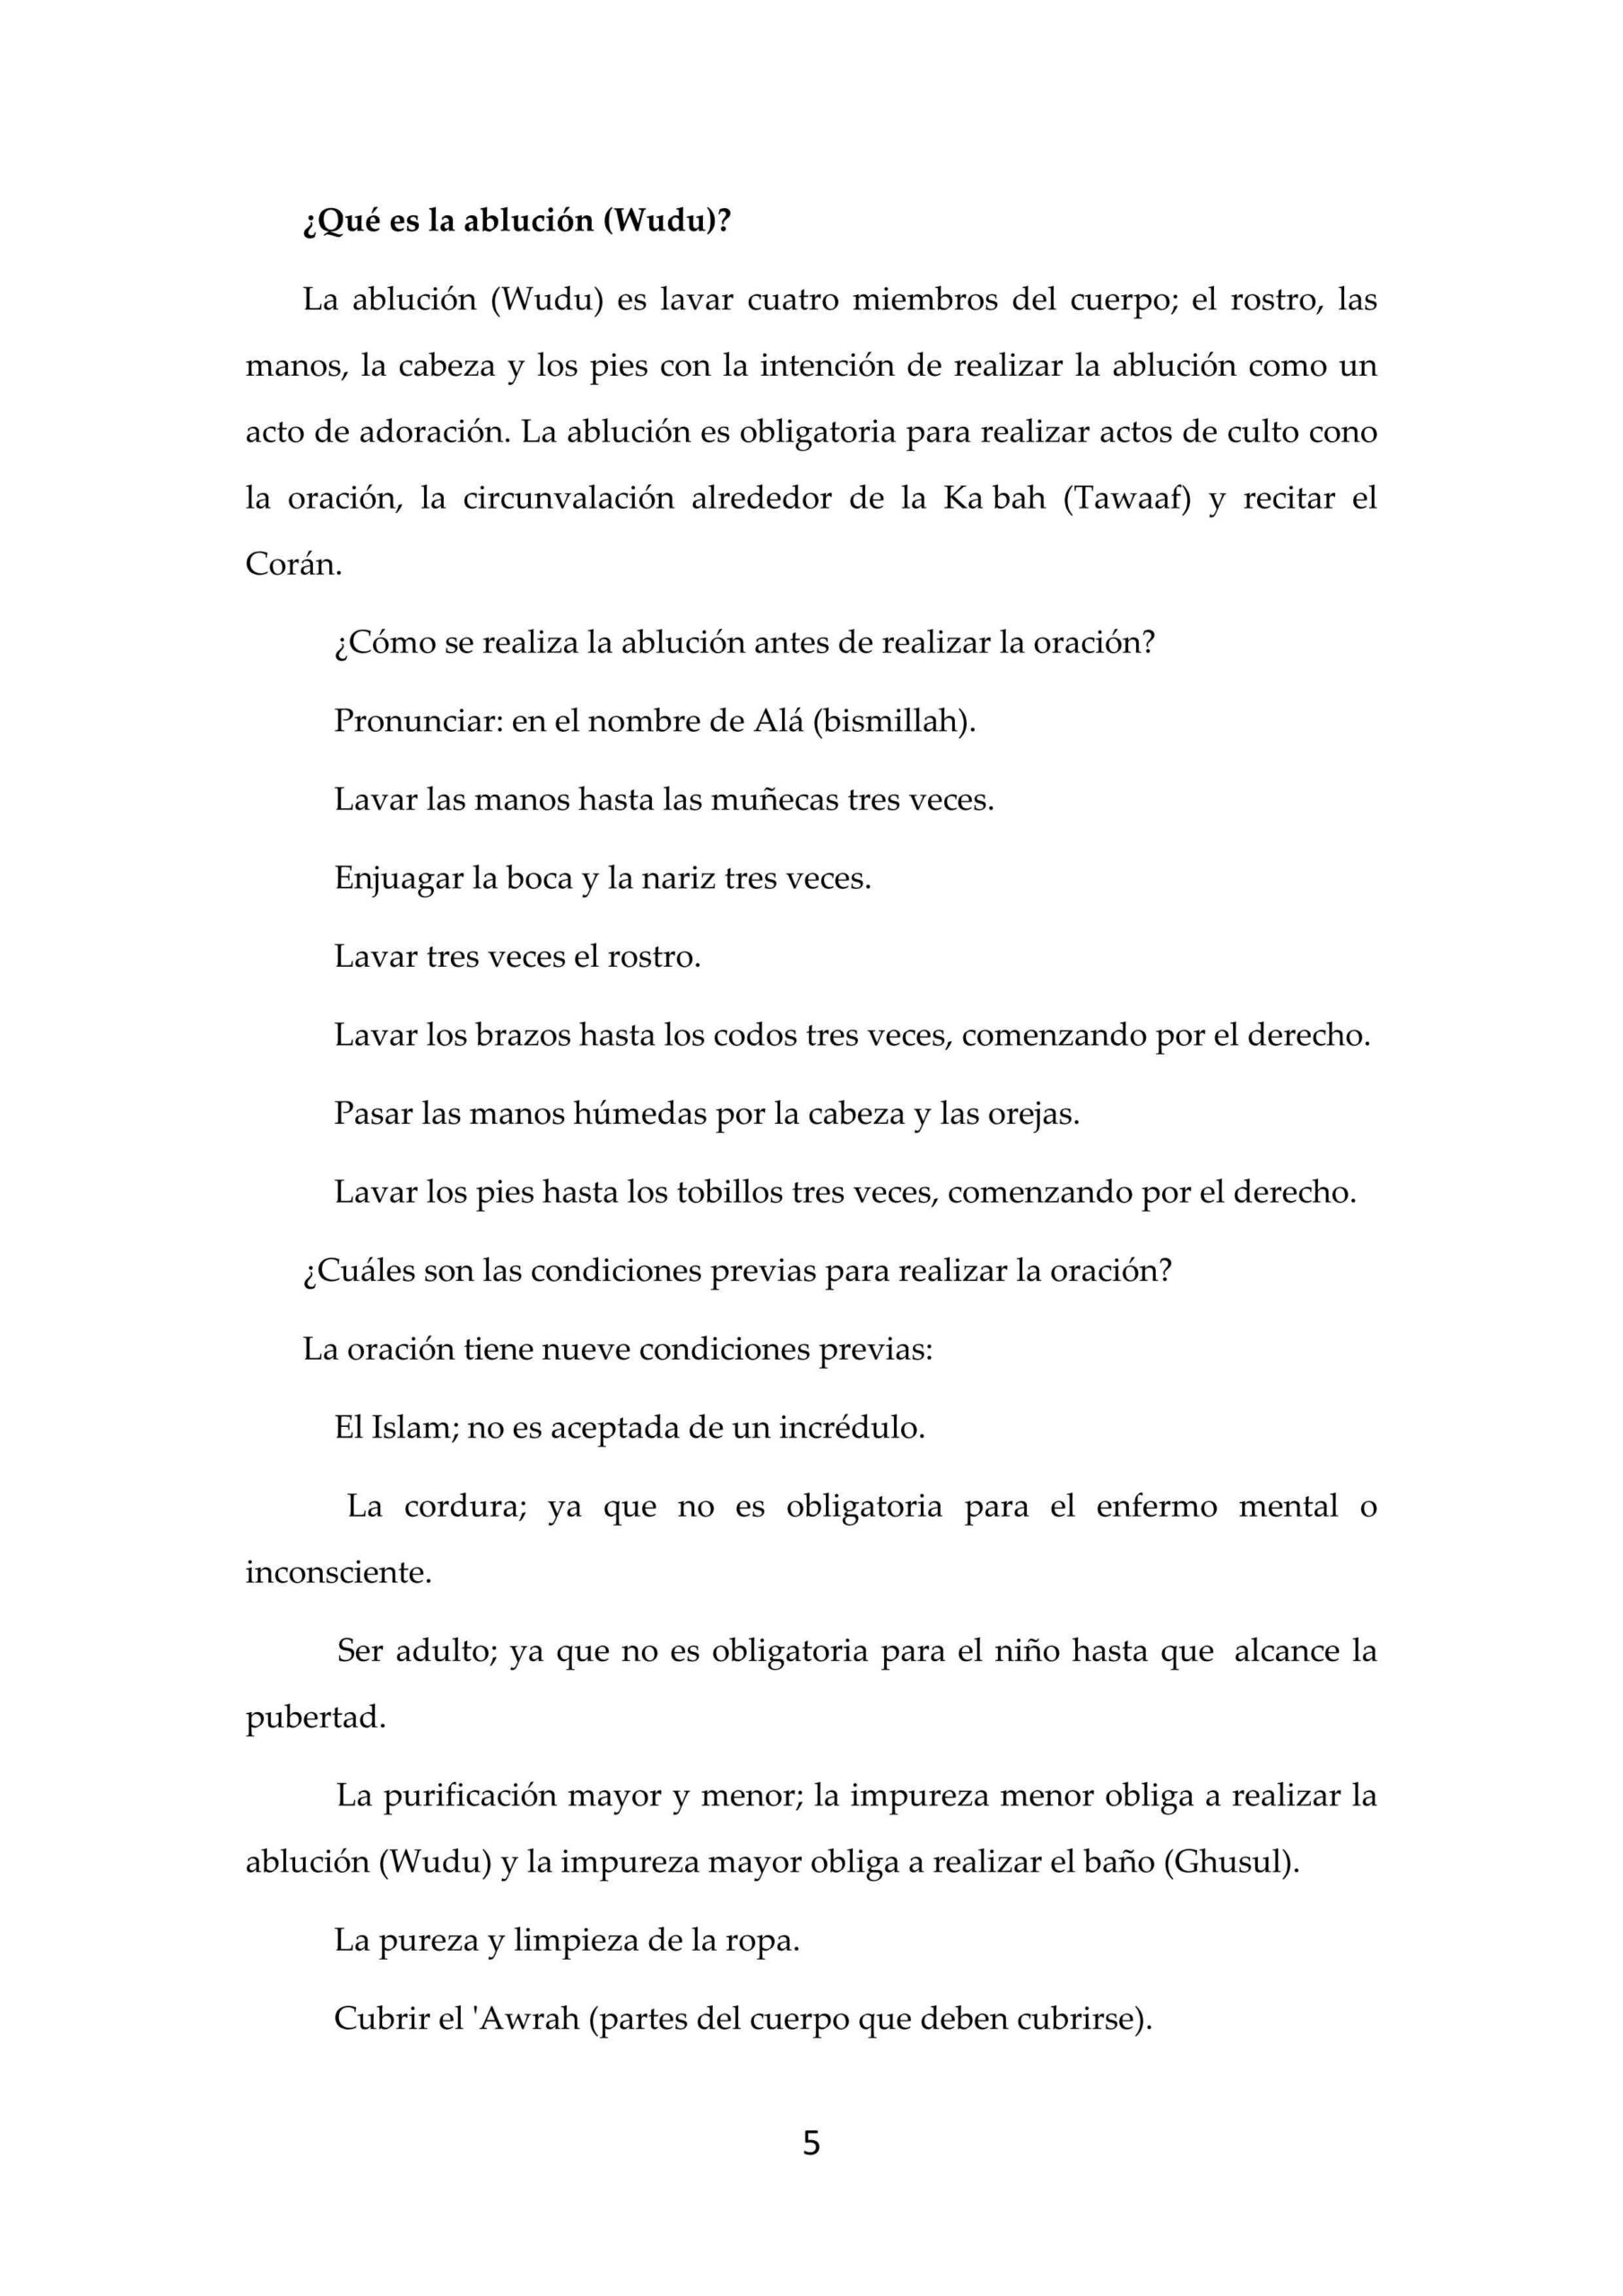 إسباني - أركان الإسلام - Los Pilares del Islam.pdf, 7-Sayfa 